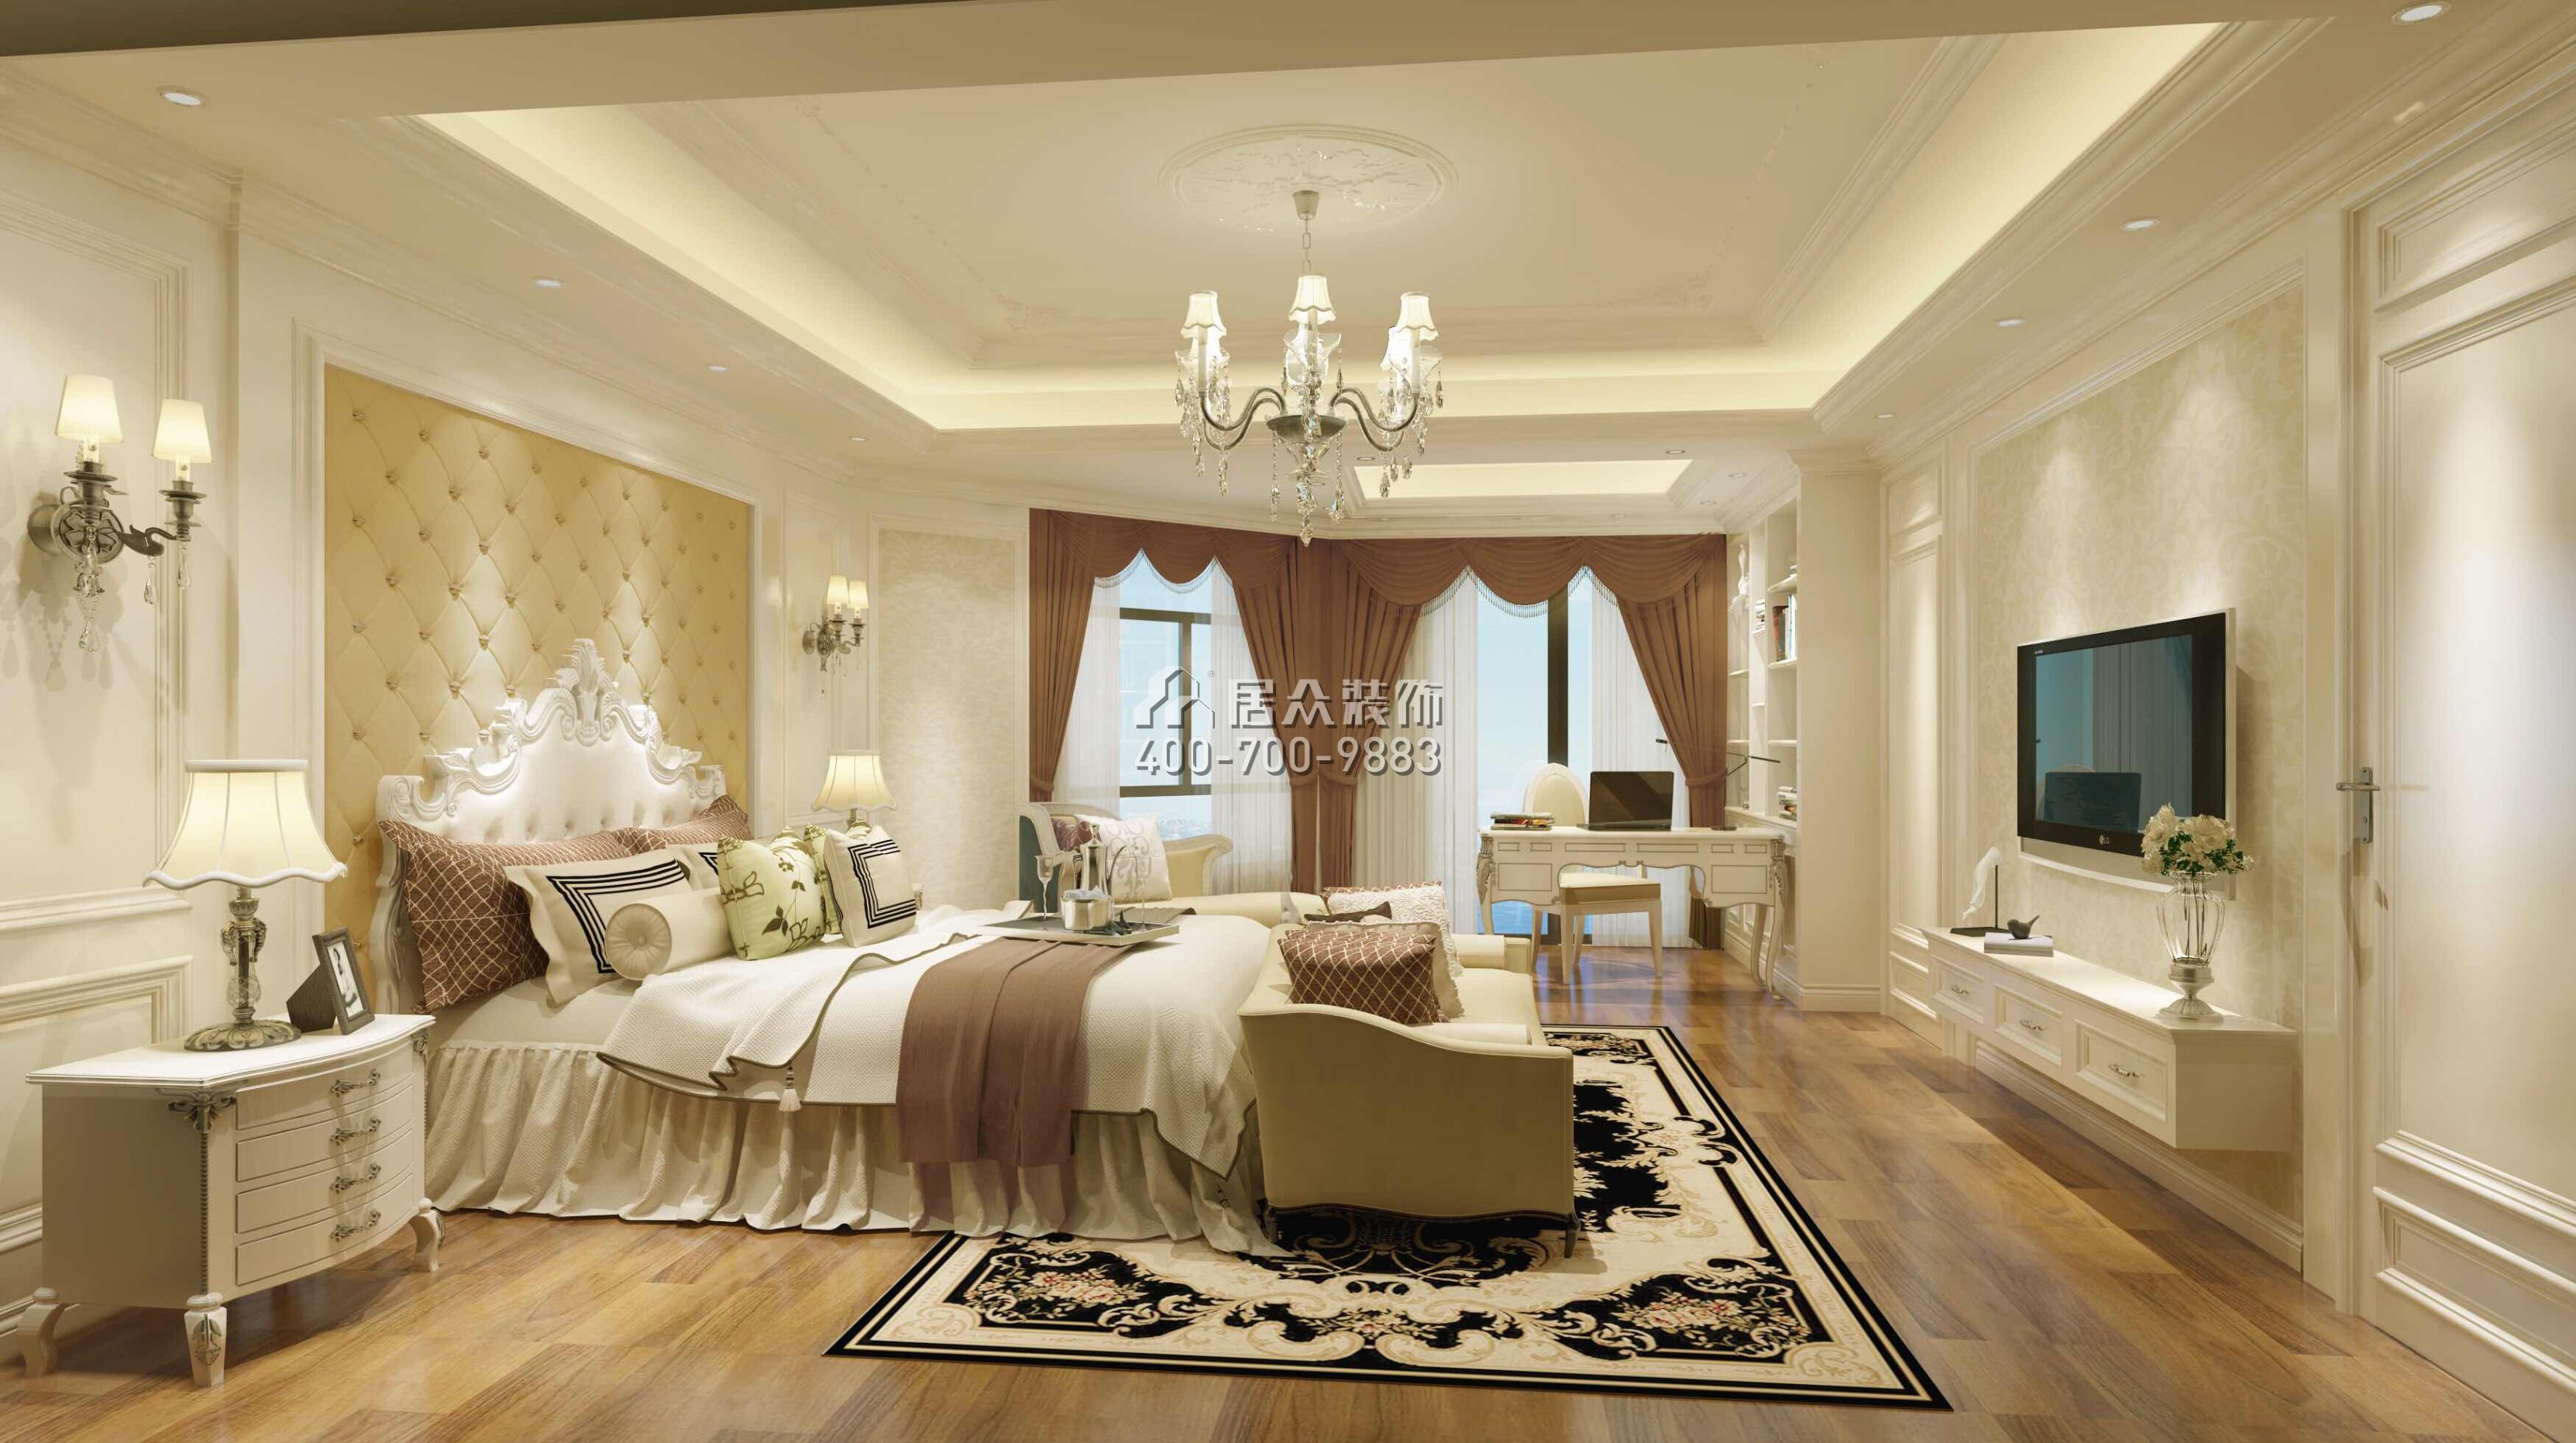 美加廣場270平方米歐式風格復式戶型臥室裝修效果圖